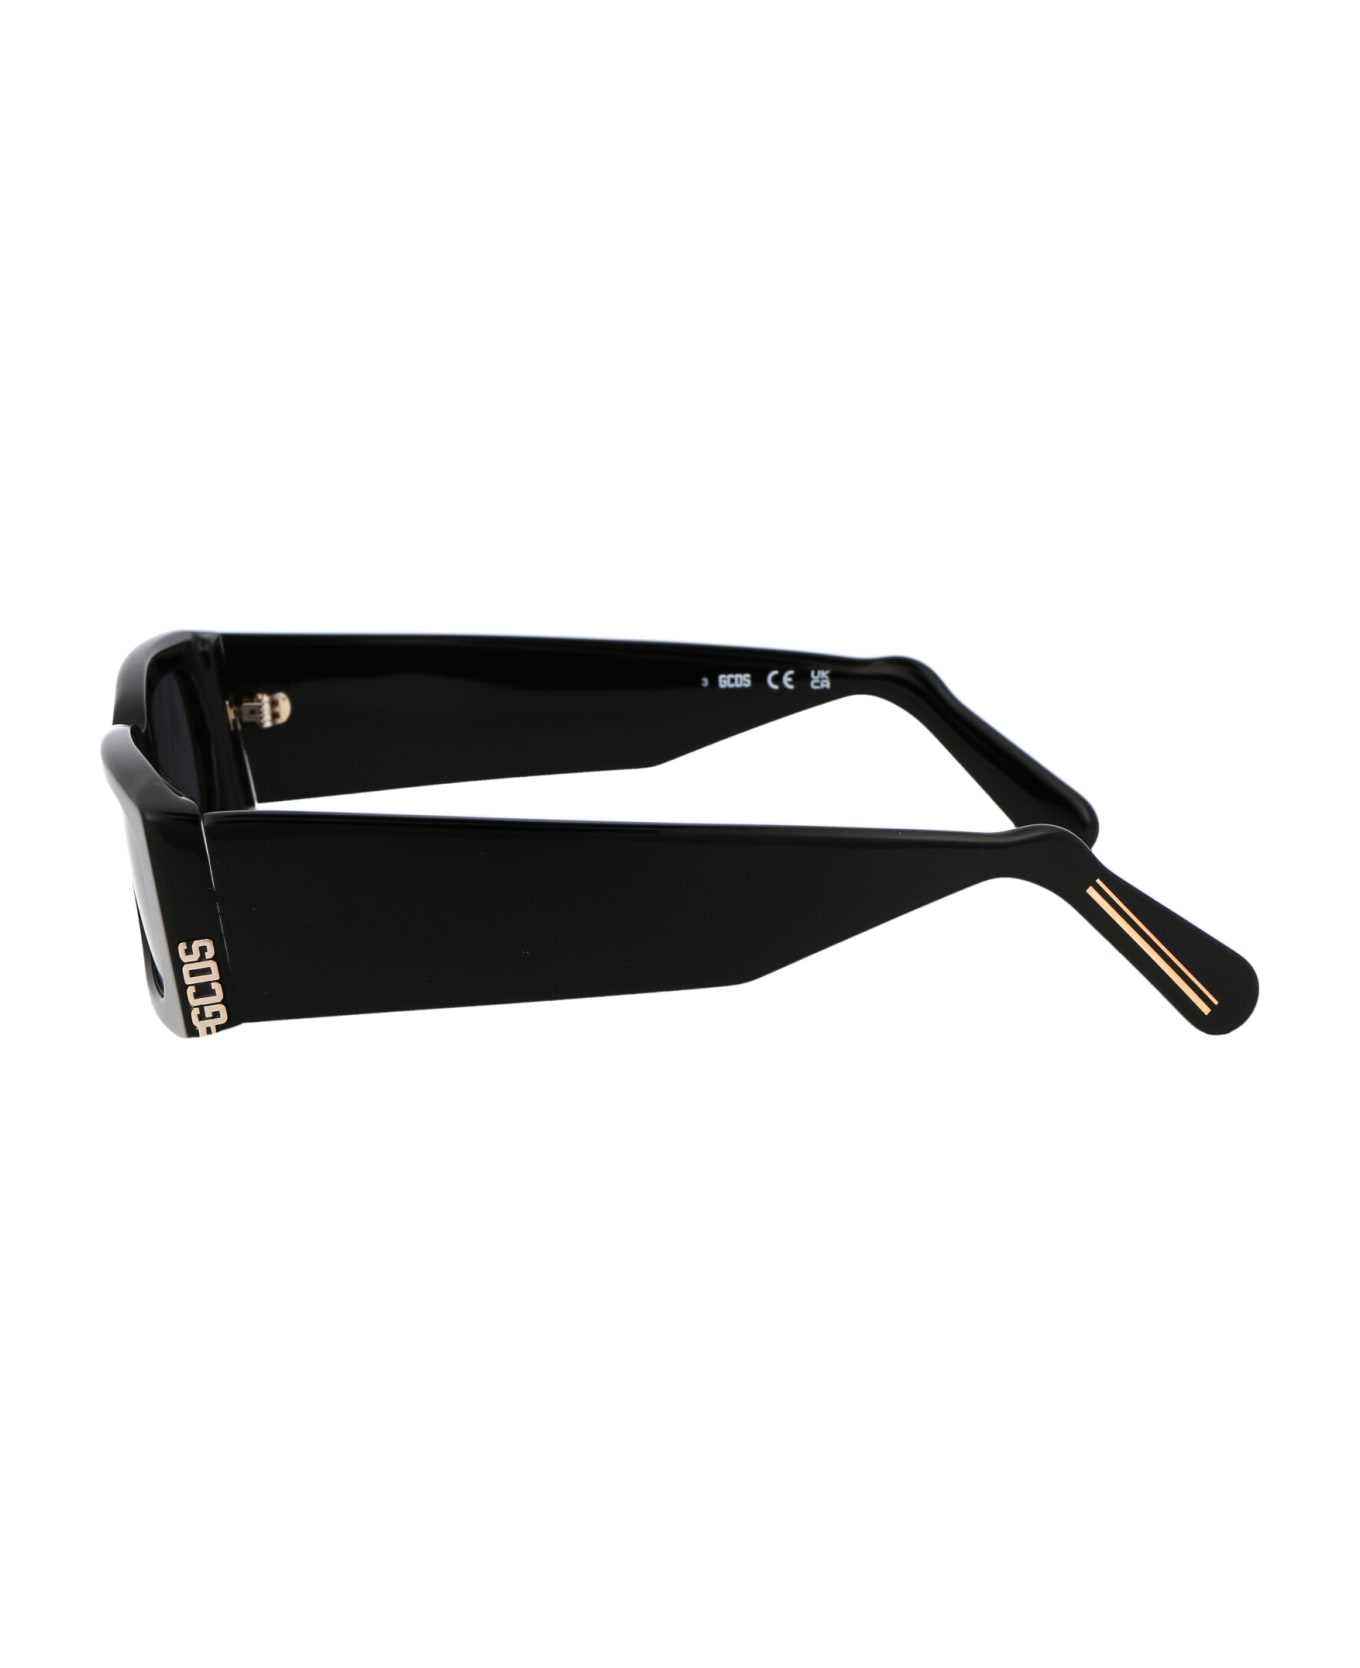 GCDS Gd0020 Sunglasses - 01A Nero Lucido/Fumo